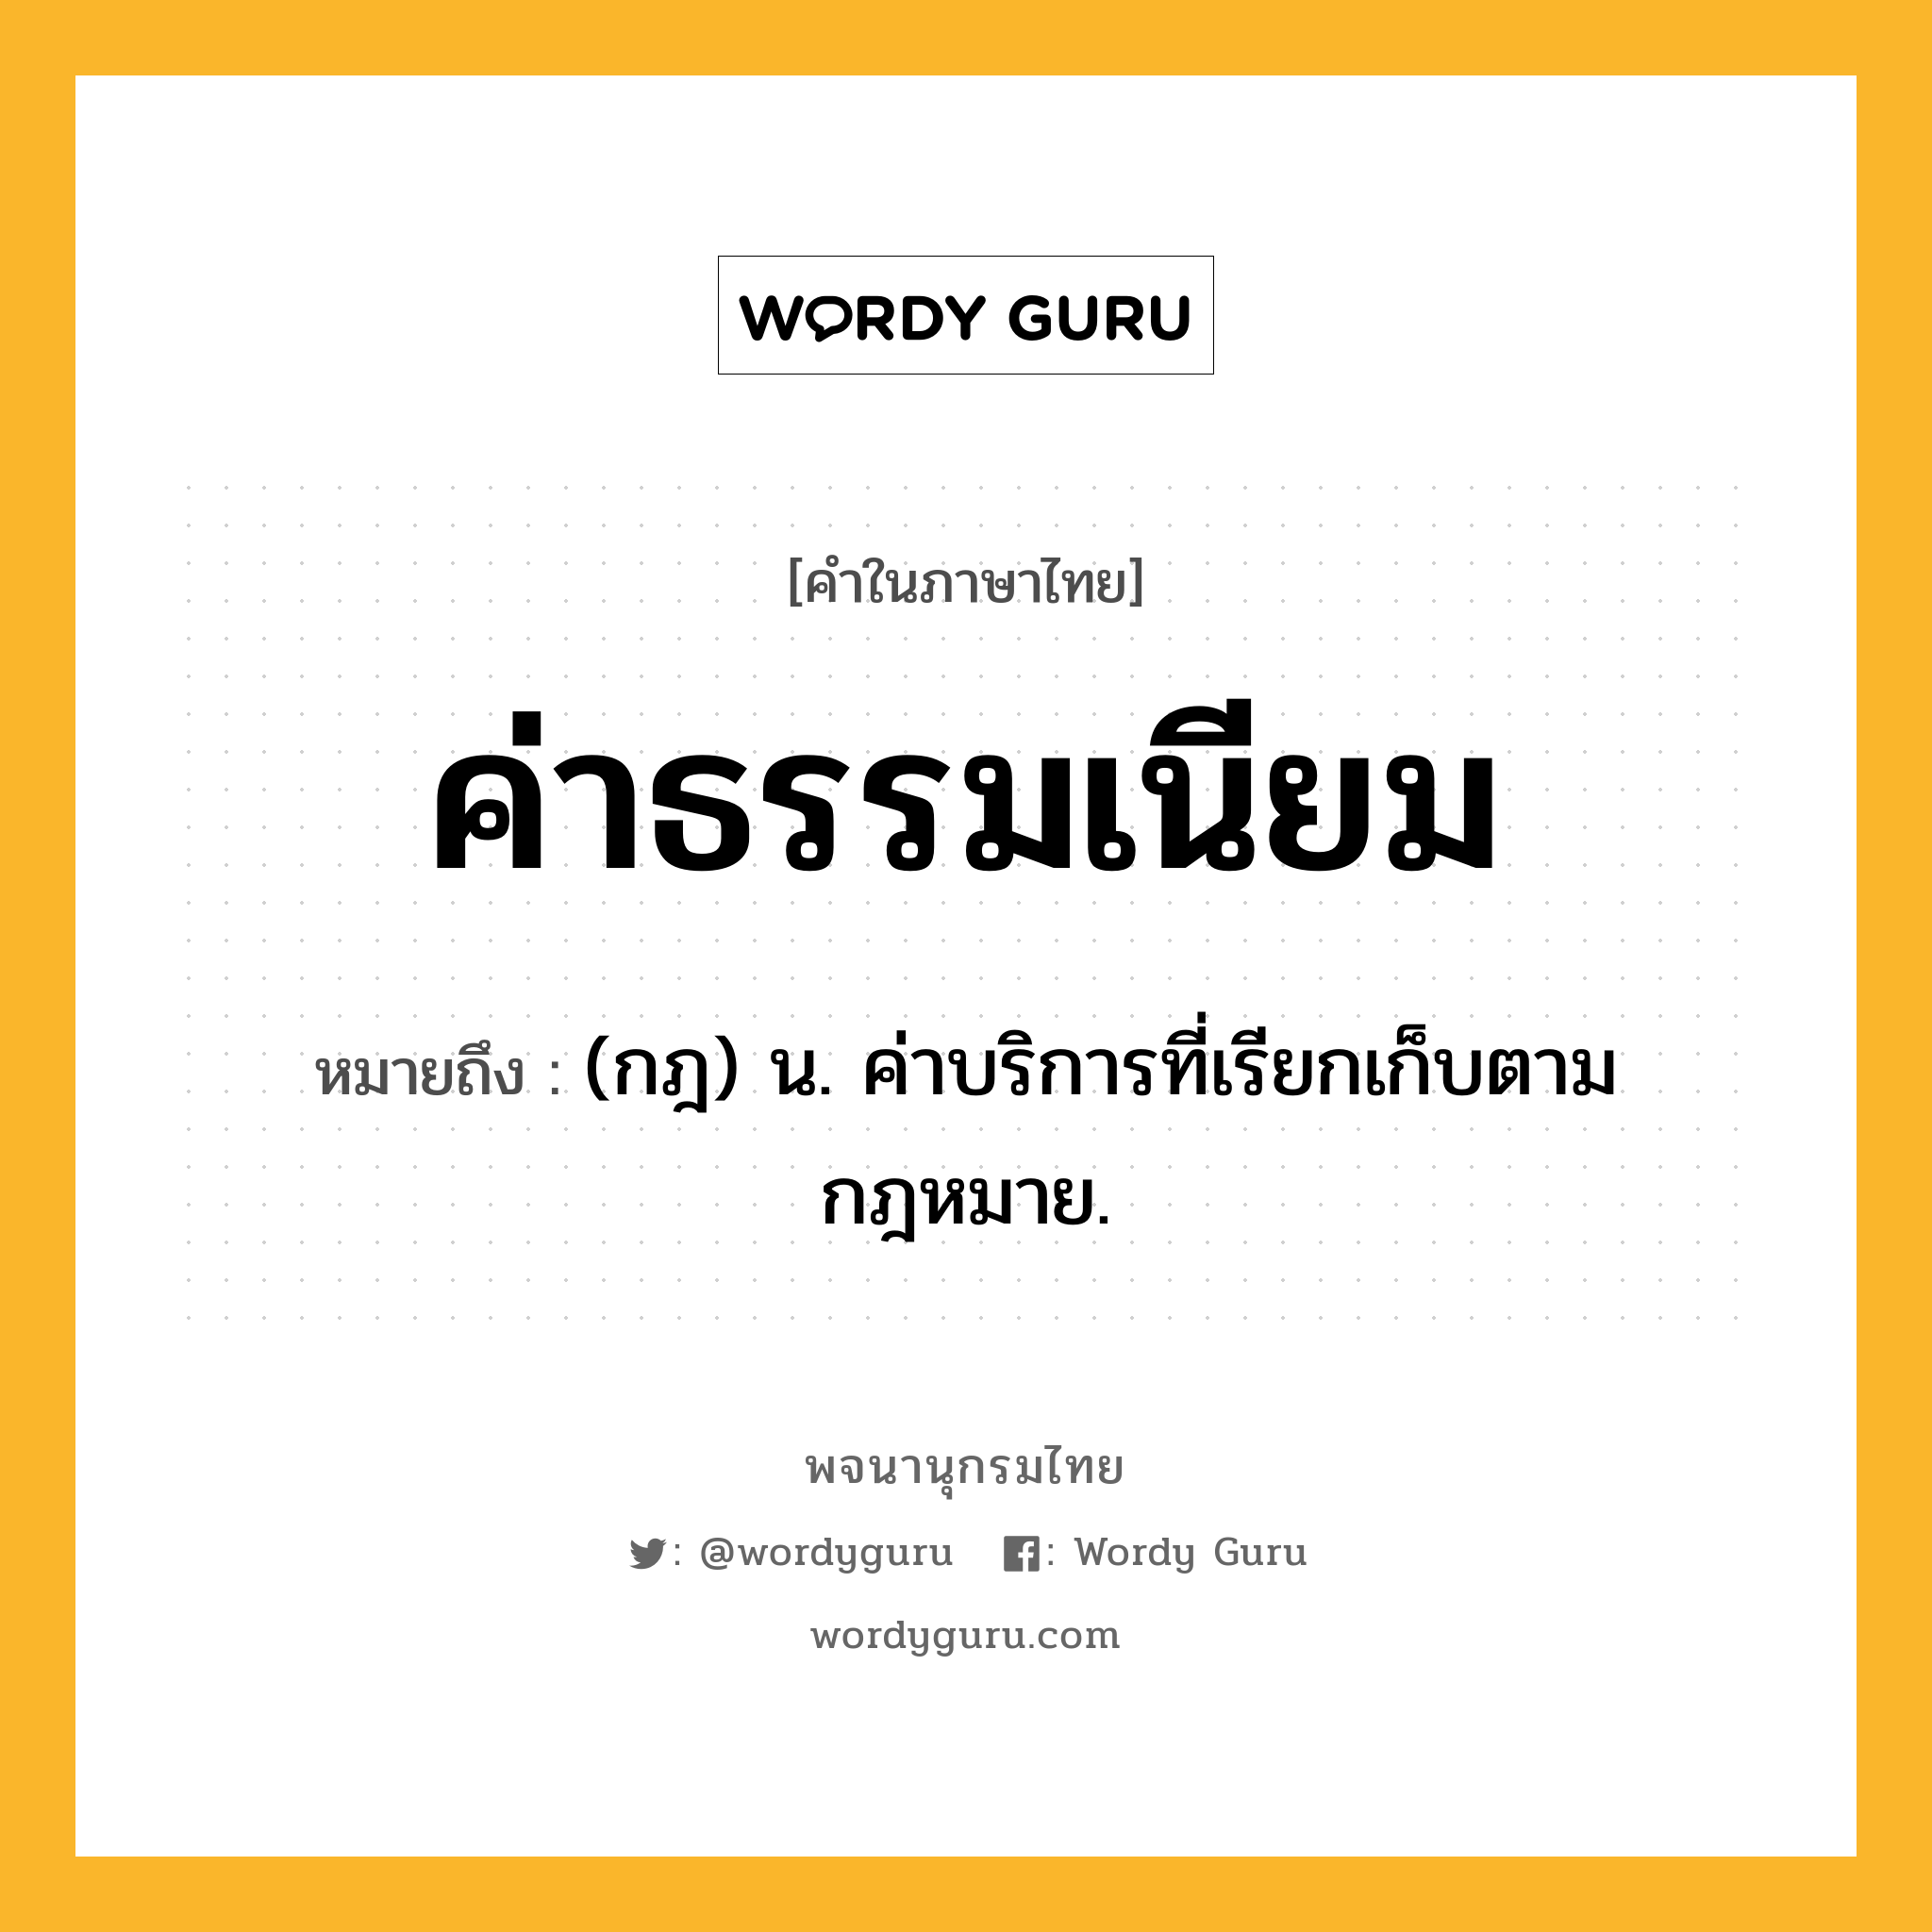 ค่าธรรมเนียม หมายถึงอะไร?, คำในภาษาไทย ค่าธรรมเนียม หมายถึง (กฎ) น. ค่าบริการที่เรียกเก็บตามกฎหมาย.